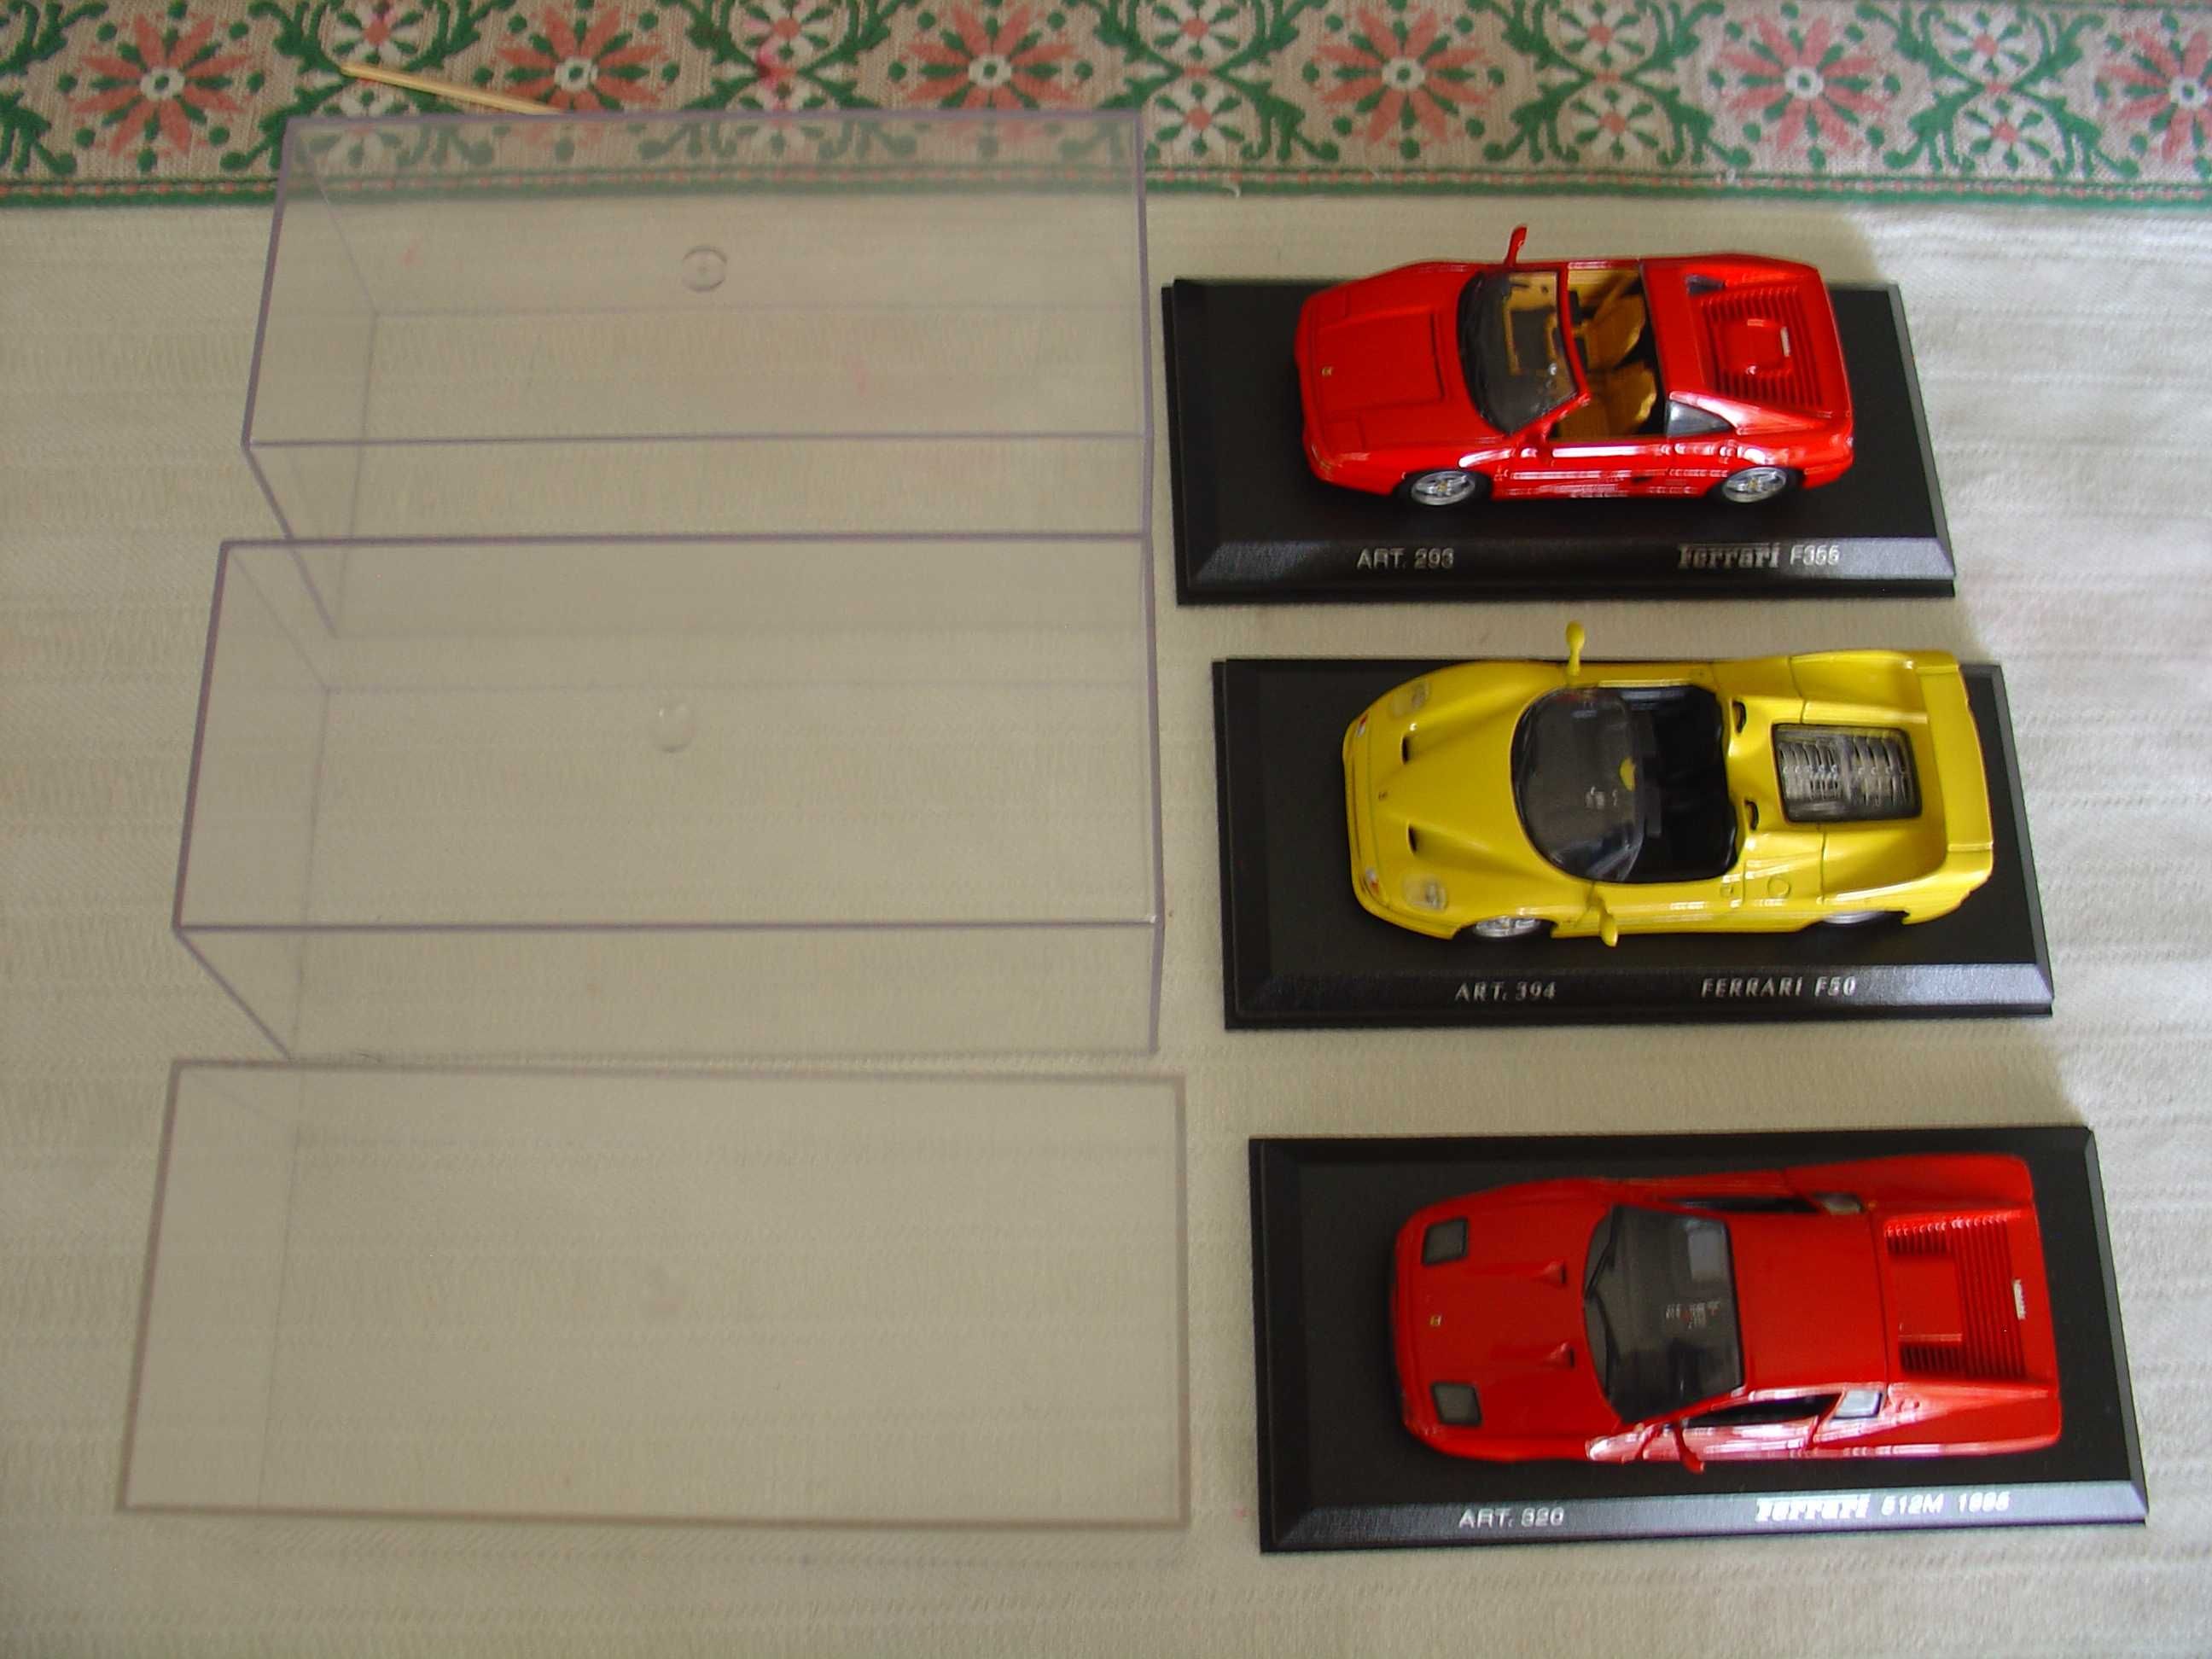 Vendo 3 miniaturas Ferrari na escala 1:43;
Modelos em Metal